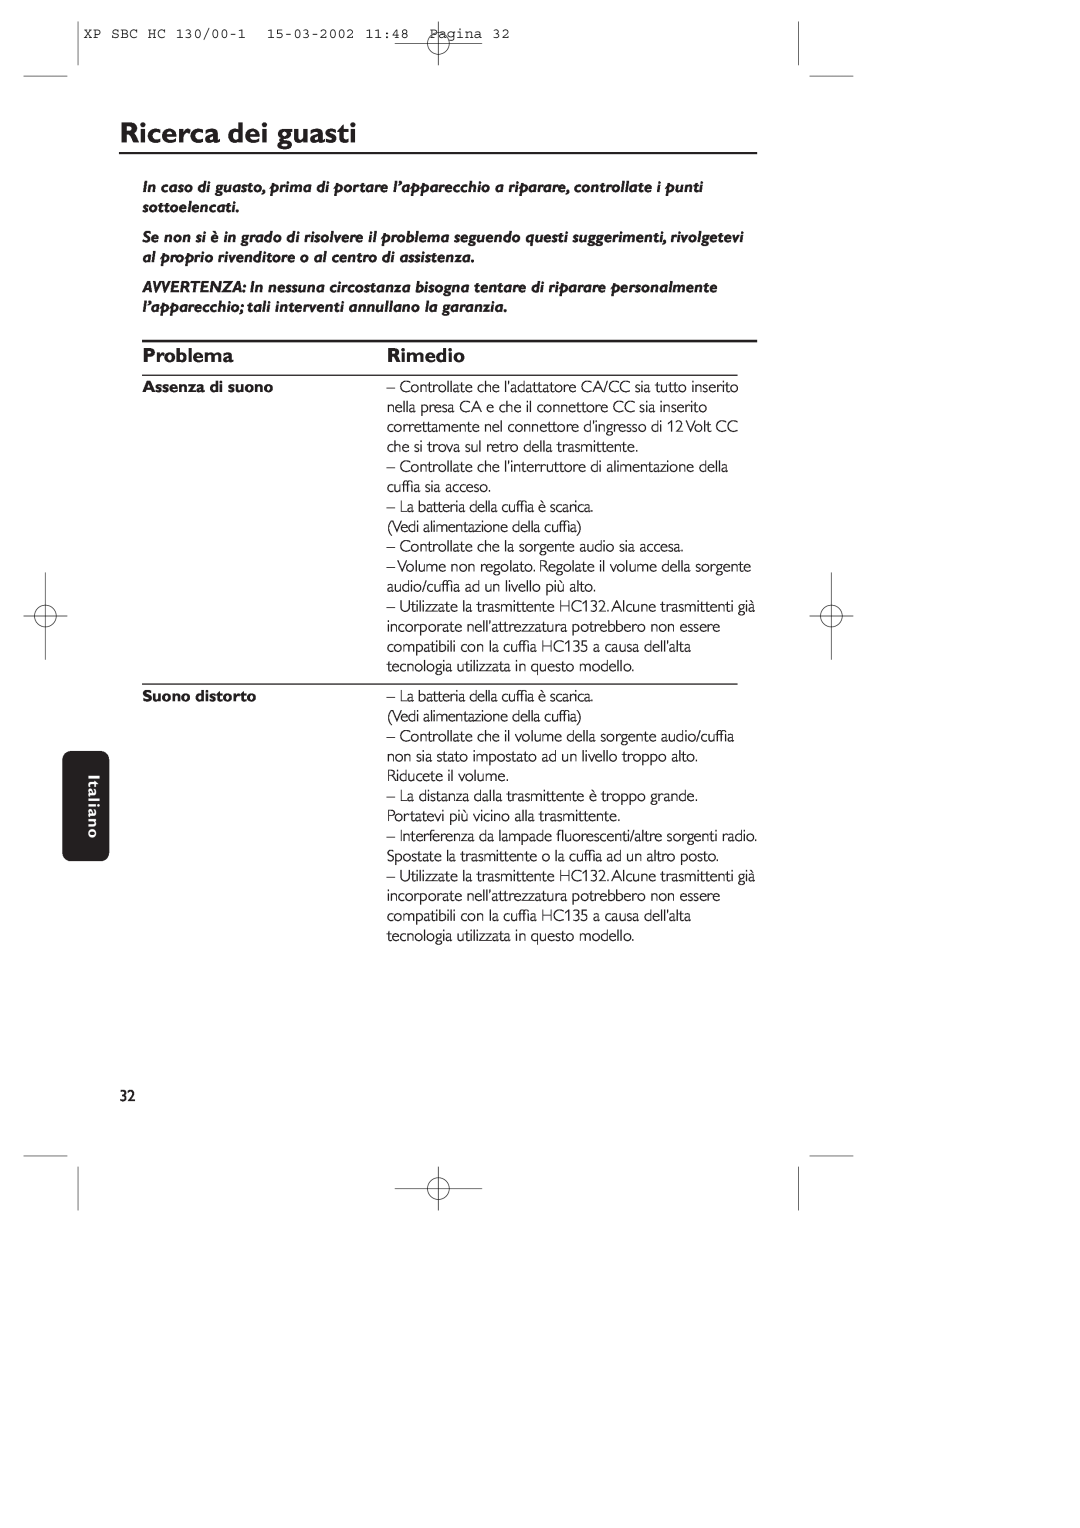 Philips SBC HC130 manual Ricerca dei guasti, Problema, Rimedio, Italiano, Assenza di suono, Suono distorto 